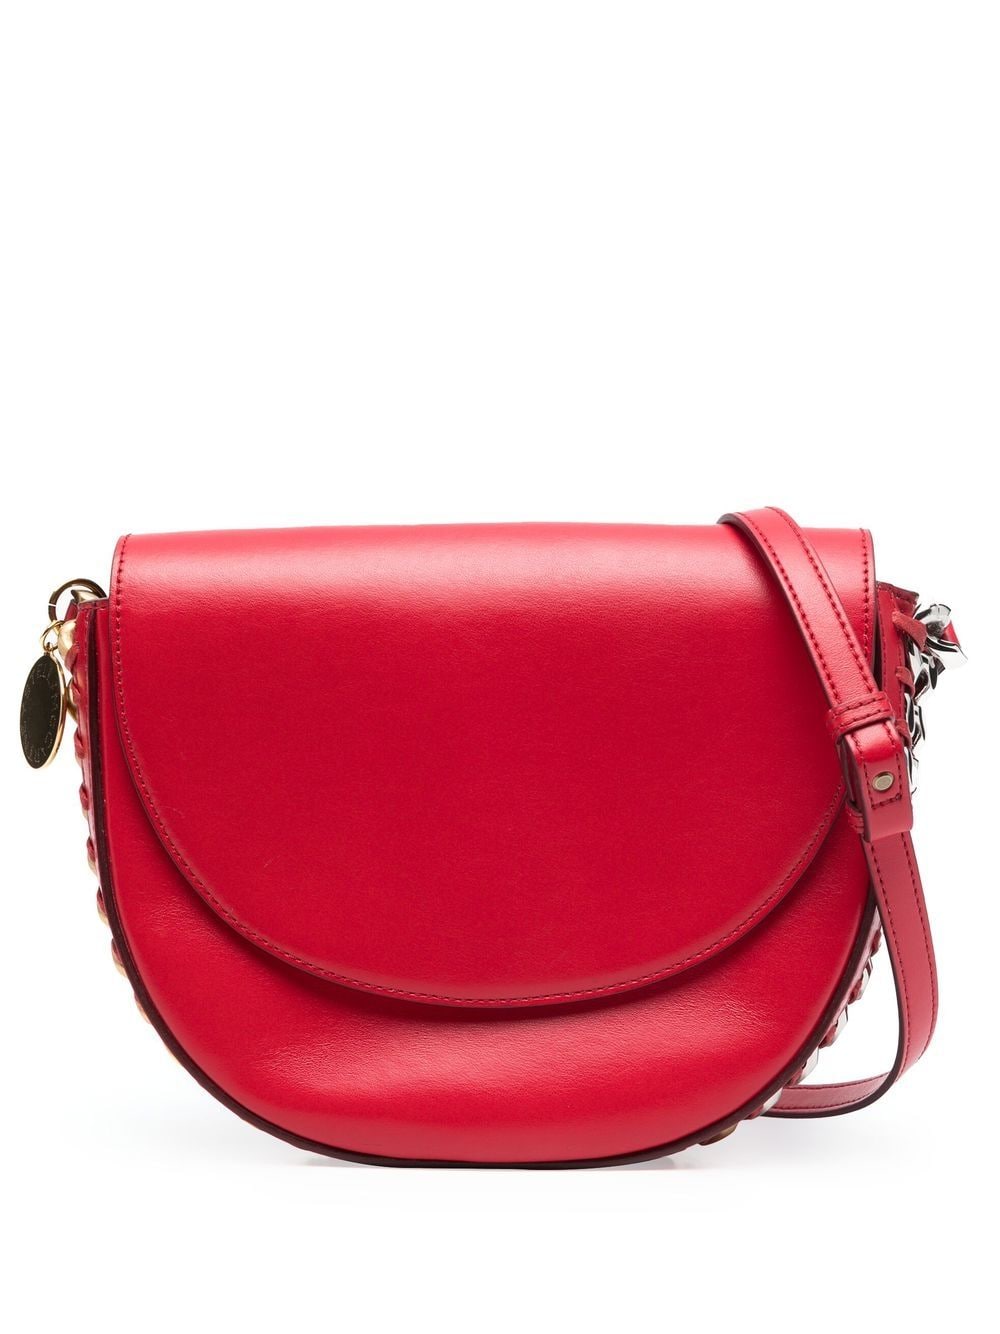 Stella McCartney medium Frayme flap shoulder bag - Red